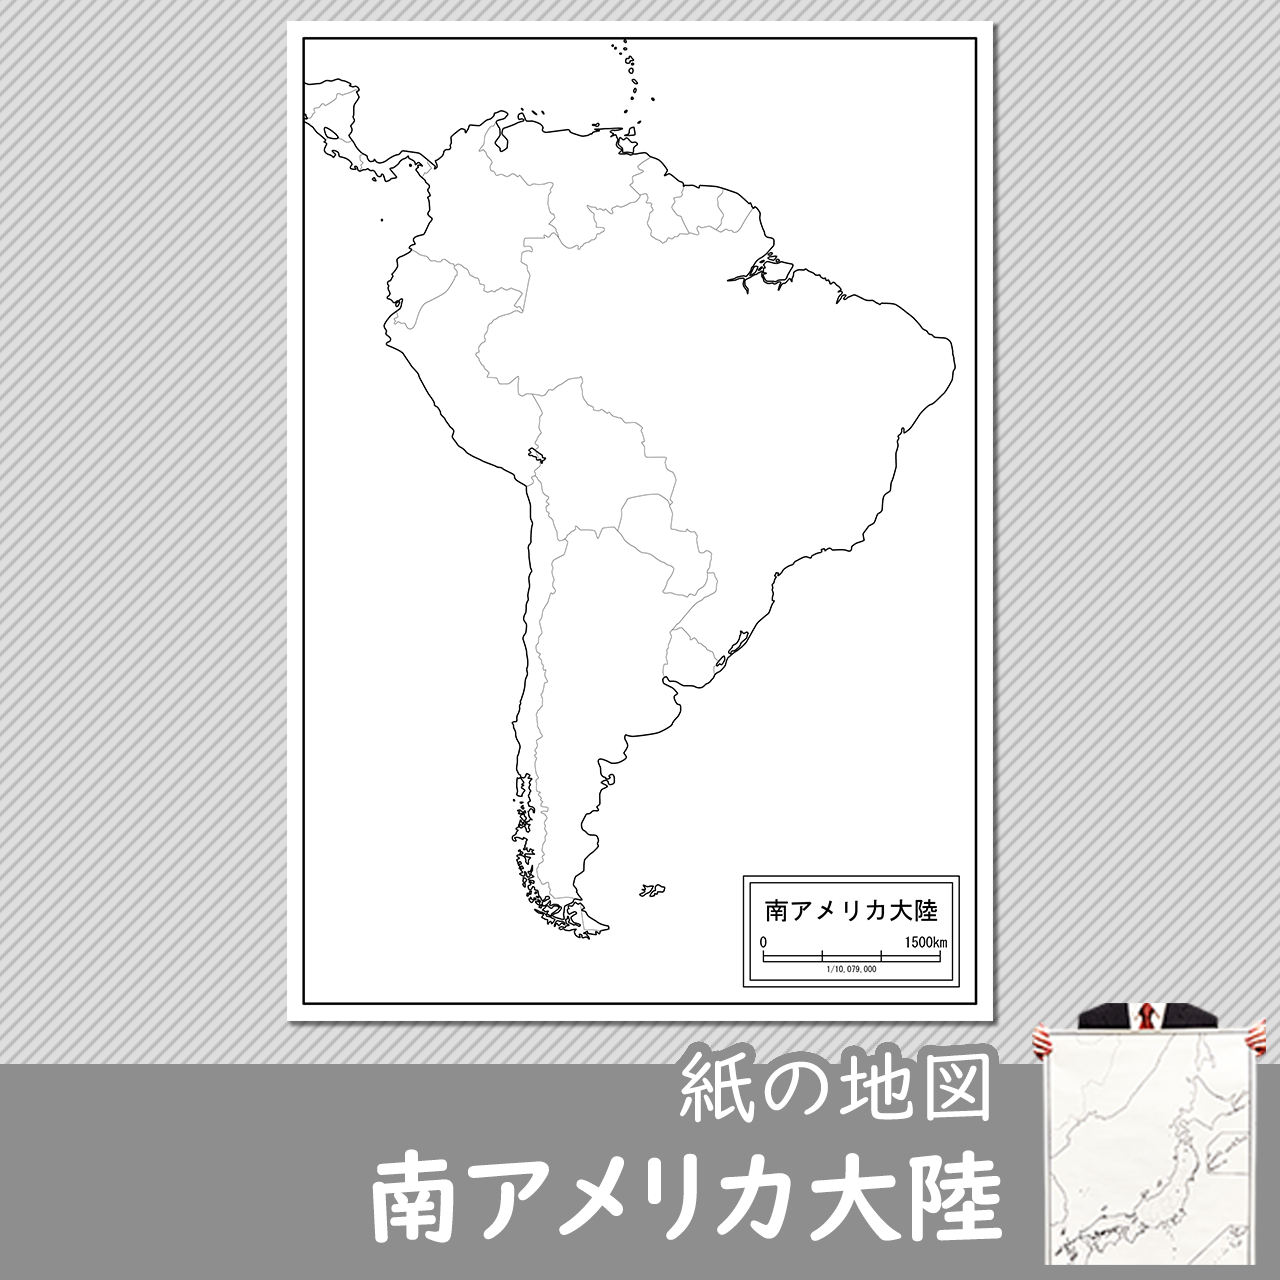 南アメリカ大陸の紙の白地図のサムネイル